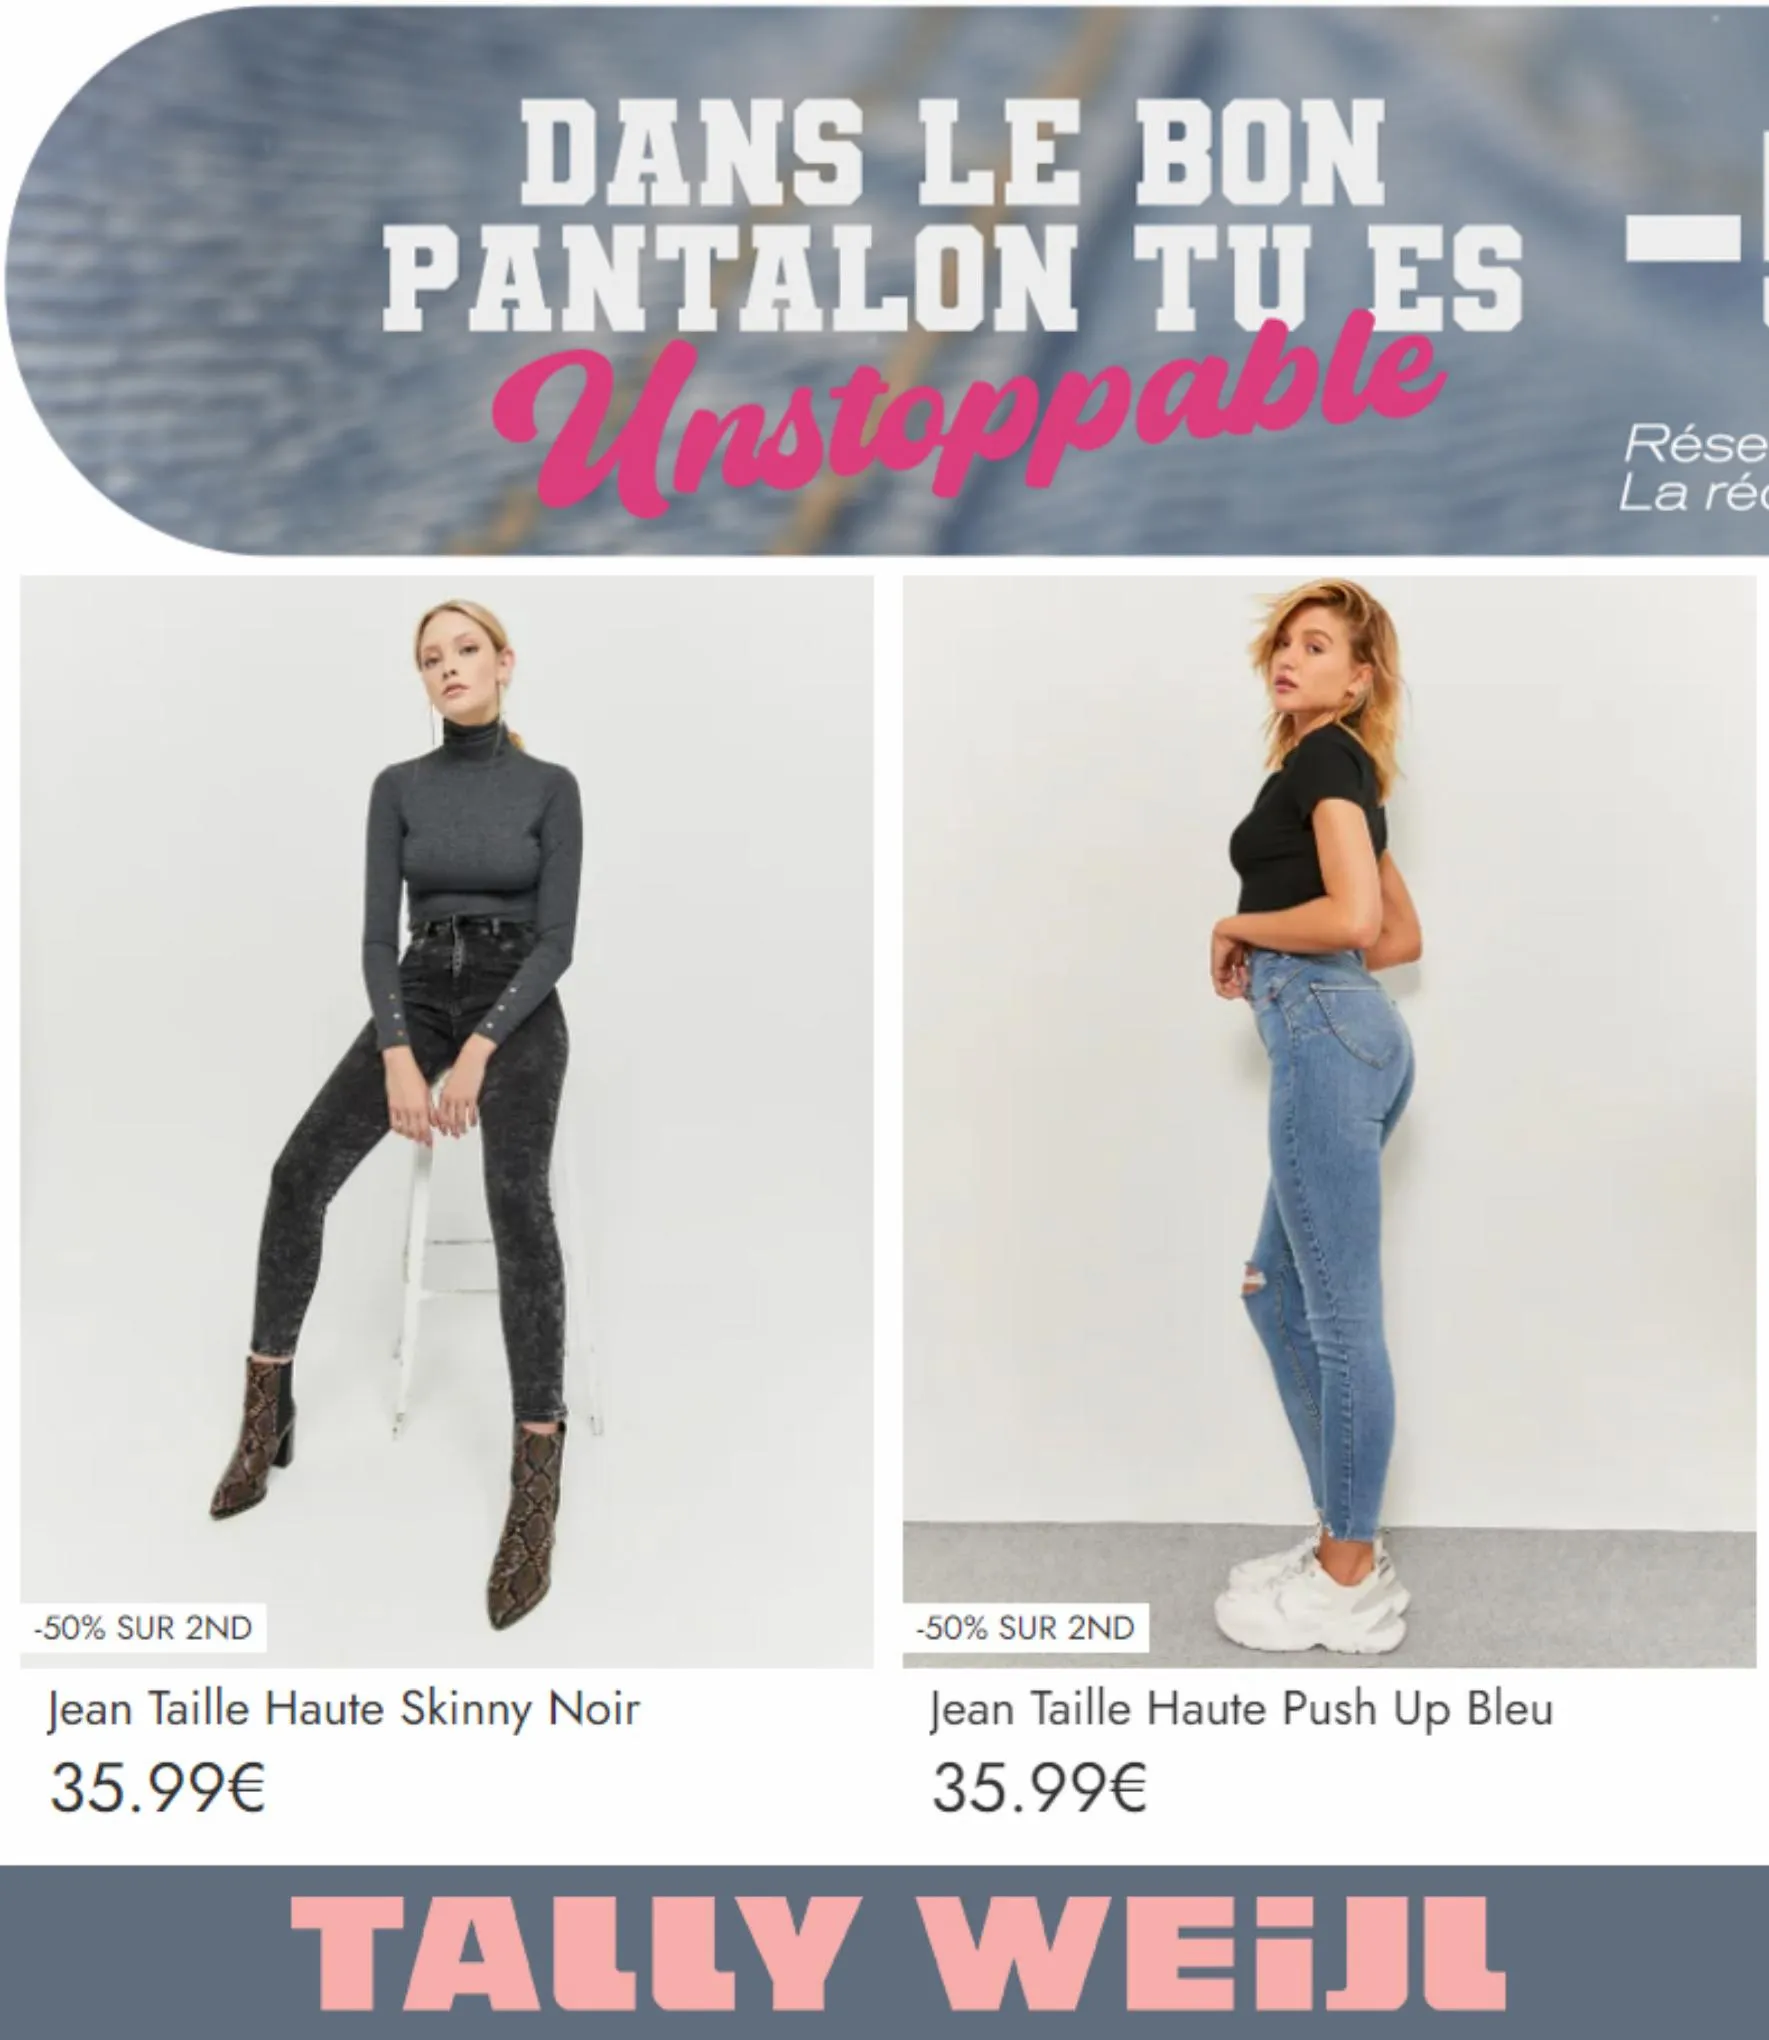 Catalogue PANTS -50% SUR 2ND, page 00002